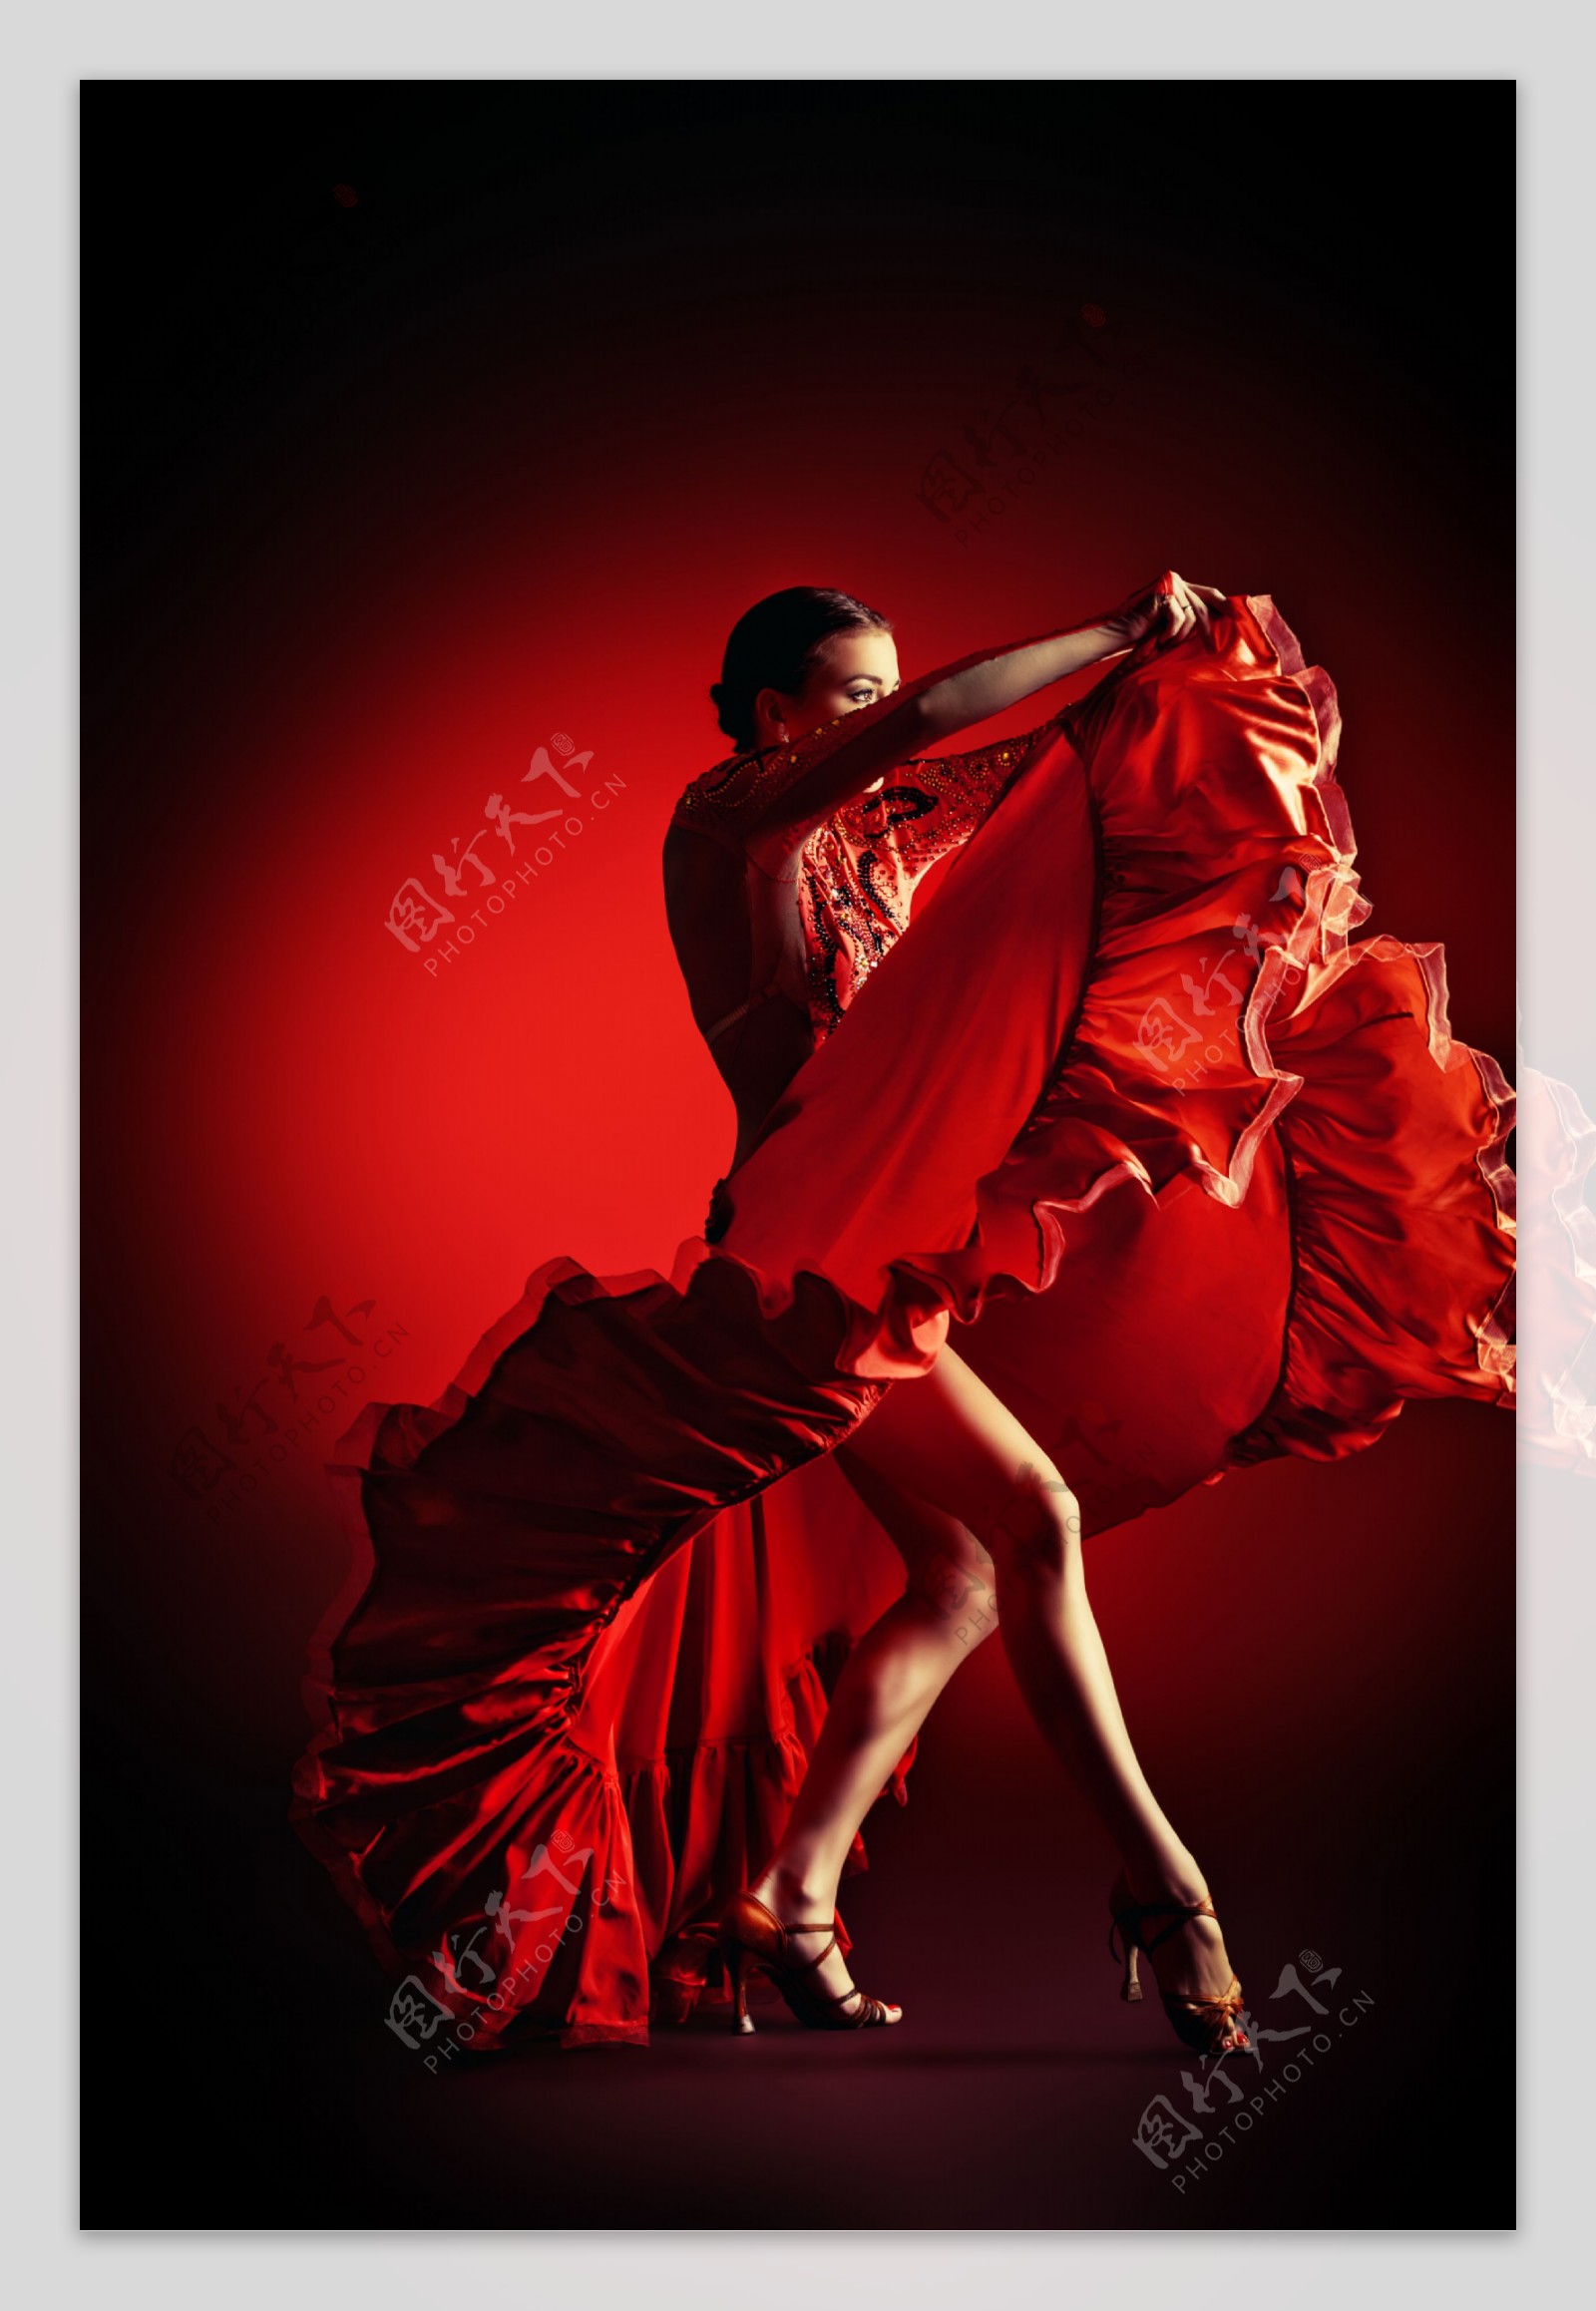 穿红色舞蹈裙跳舞的美女图片